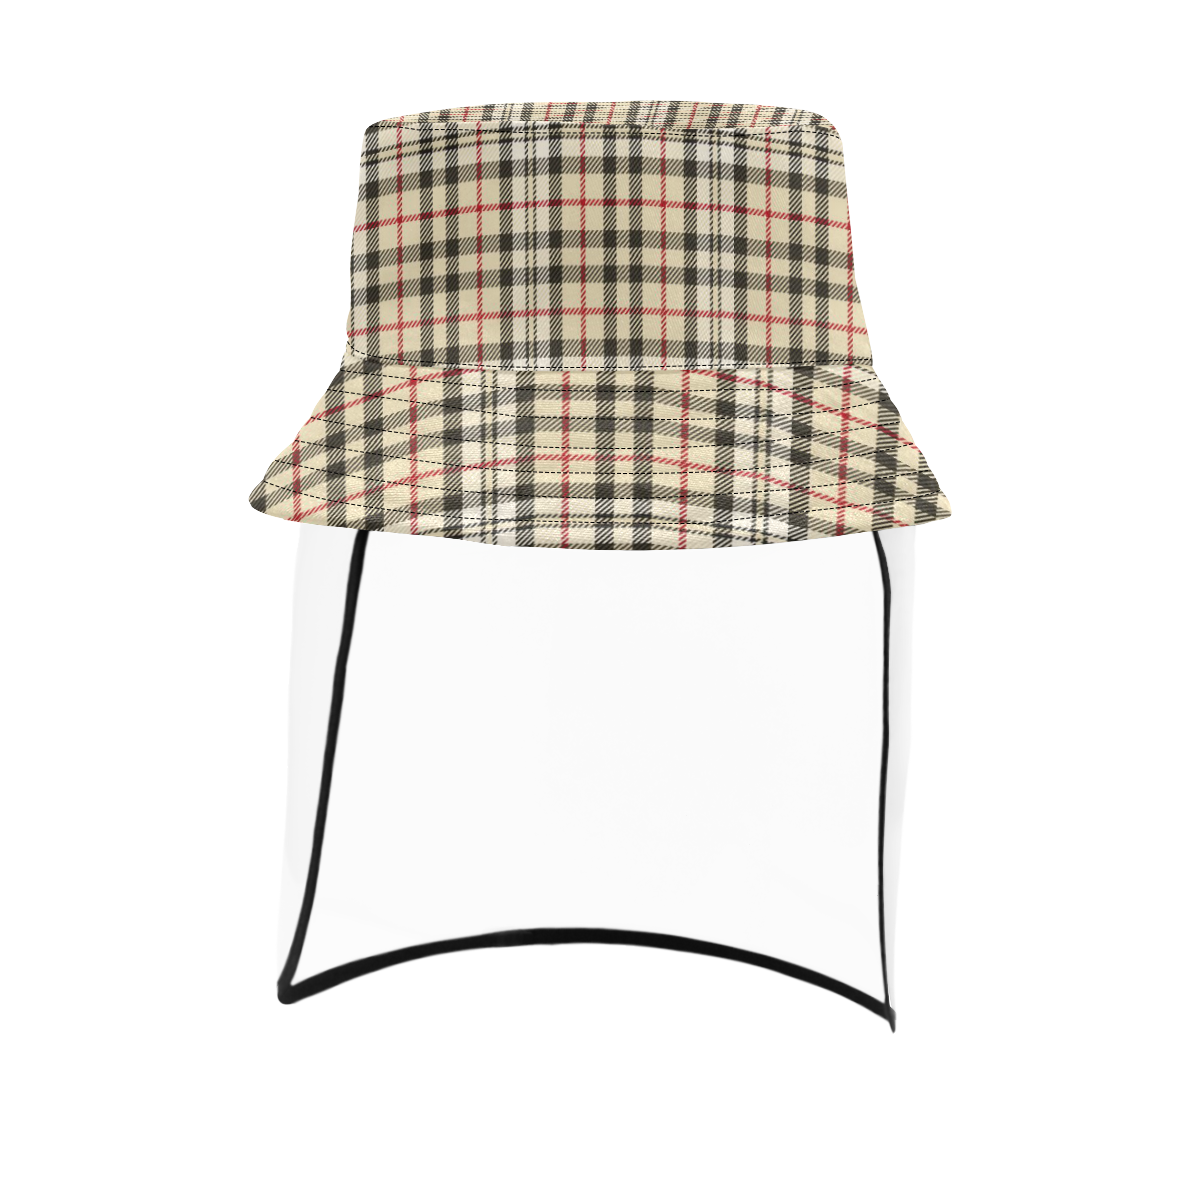 STRIPES LIGHT BROWN Men's Bucket Hat (Detachable Face Shield)